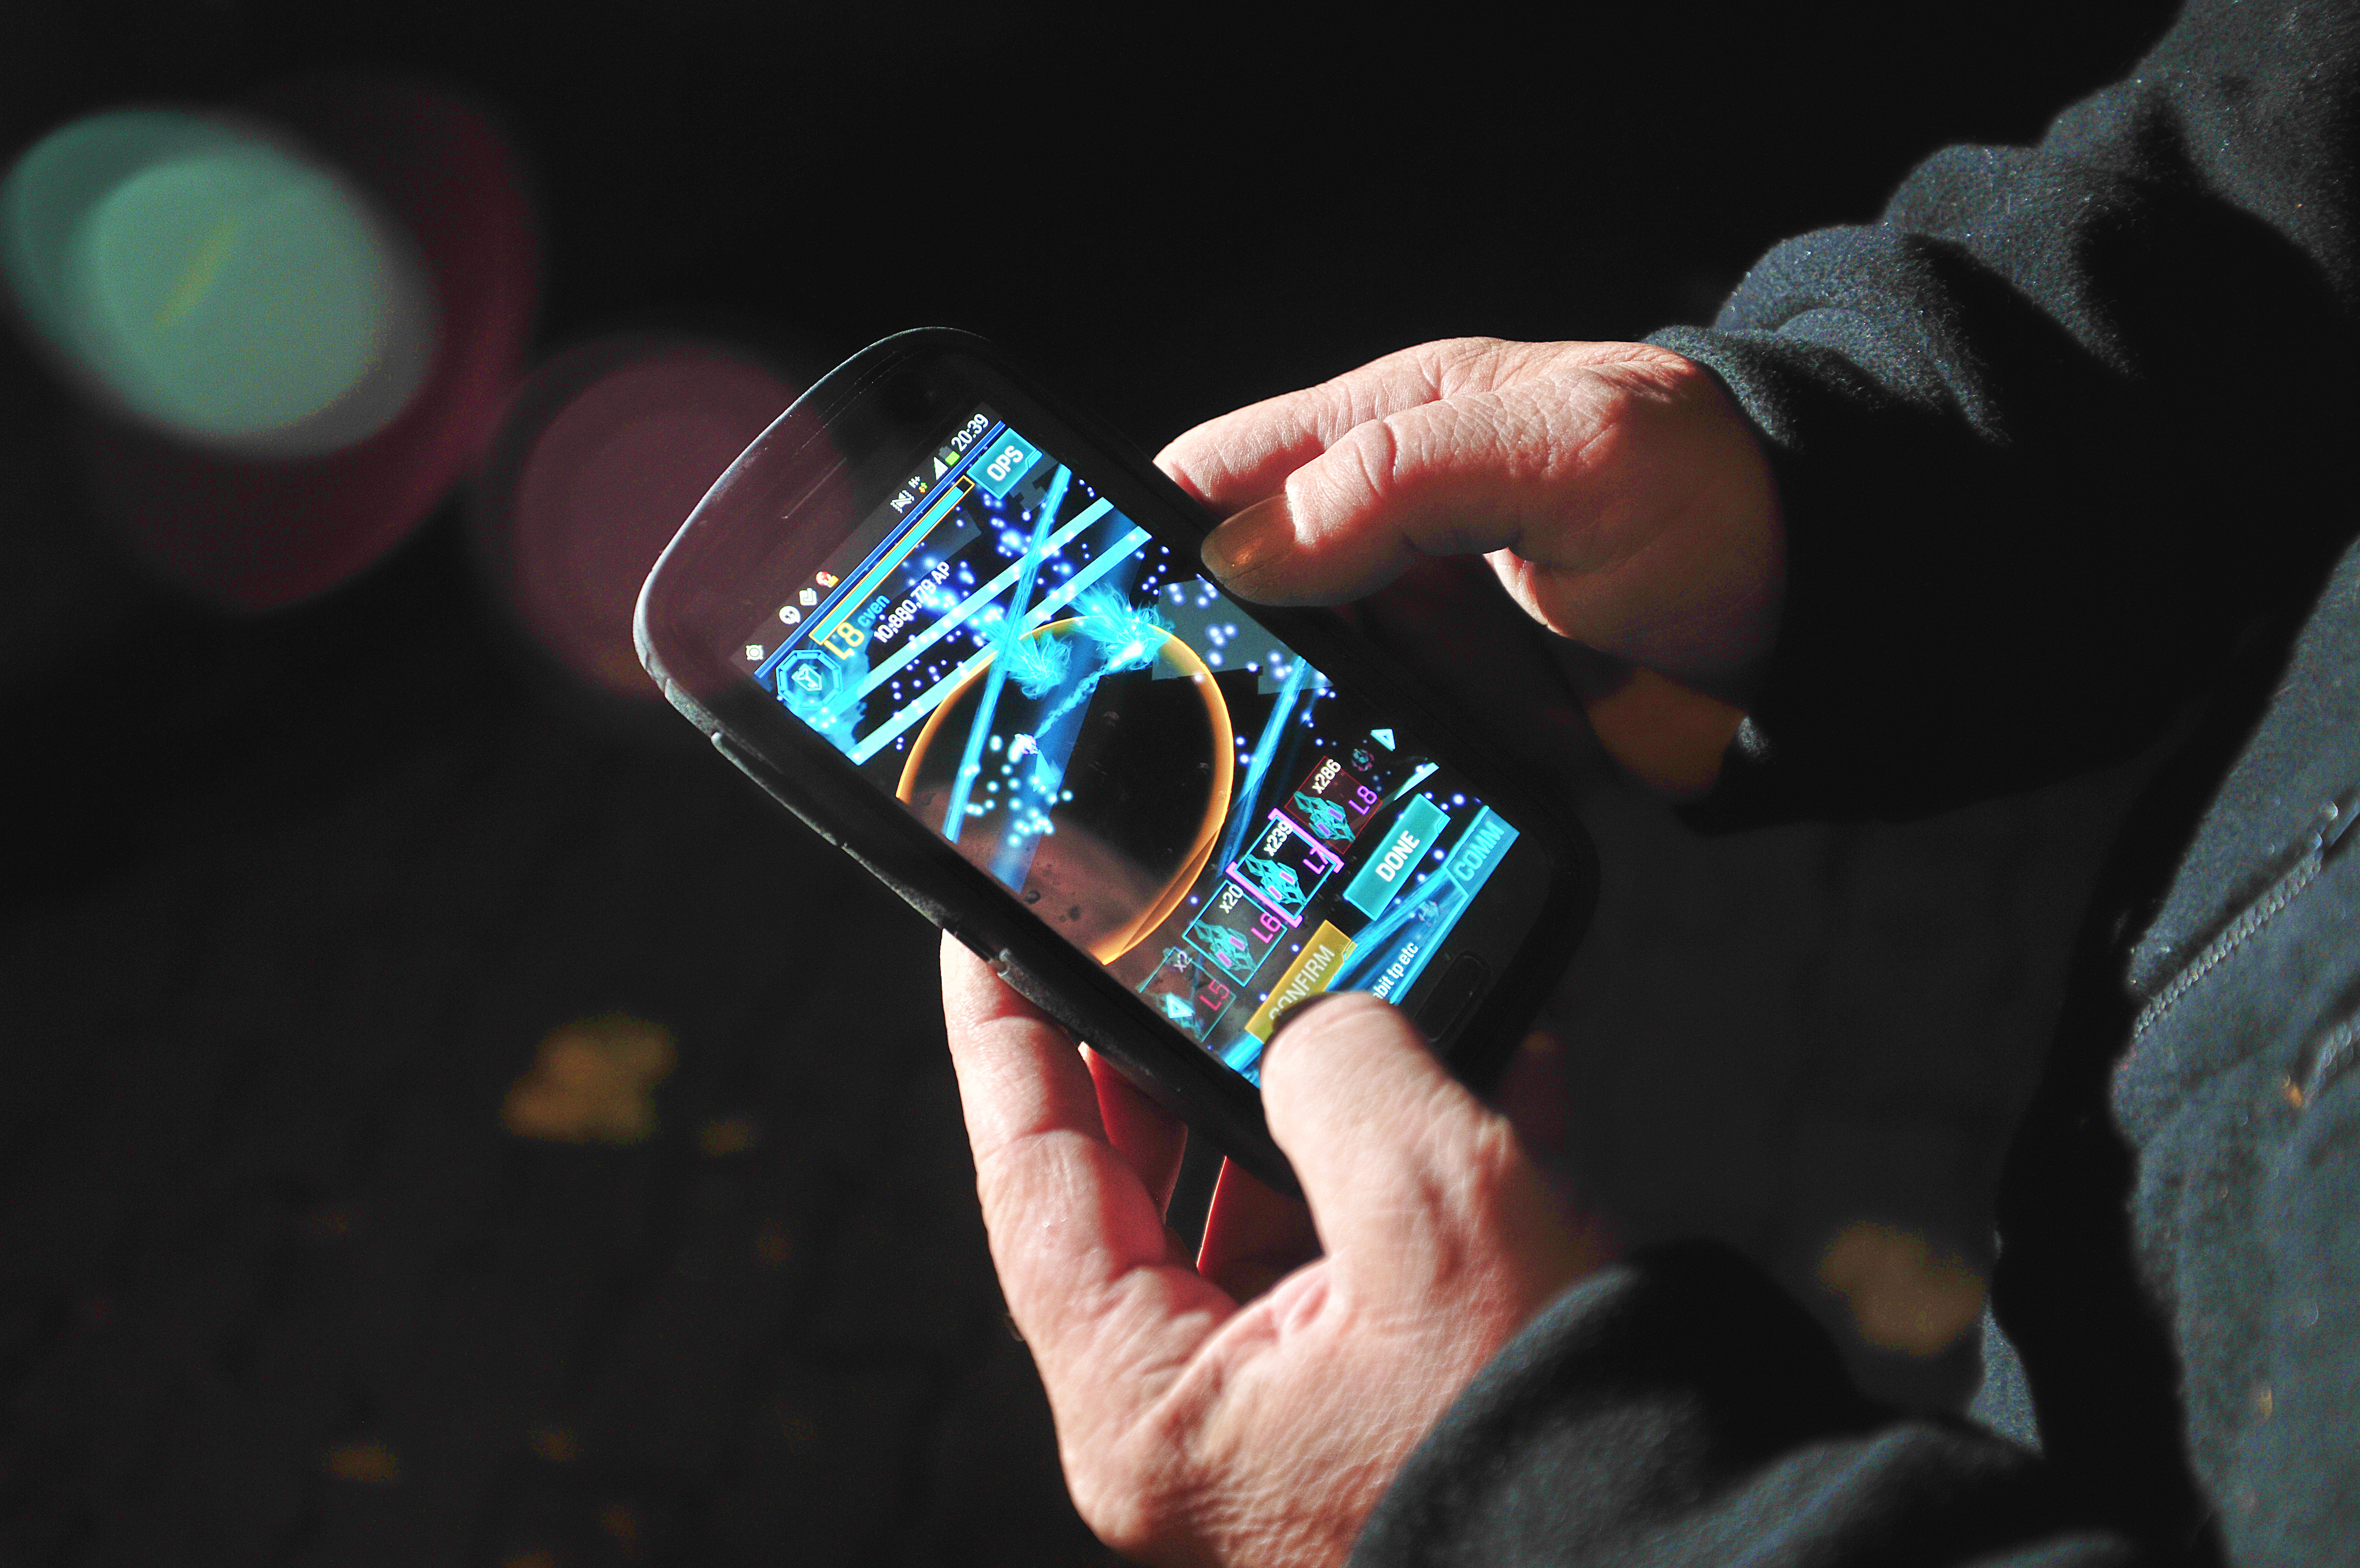 Ingress running on an Android phone. (ullstein bild&mdash;ullstein bild via Getty Images)